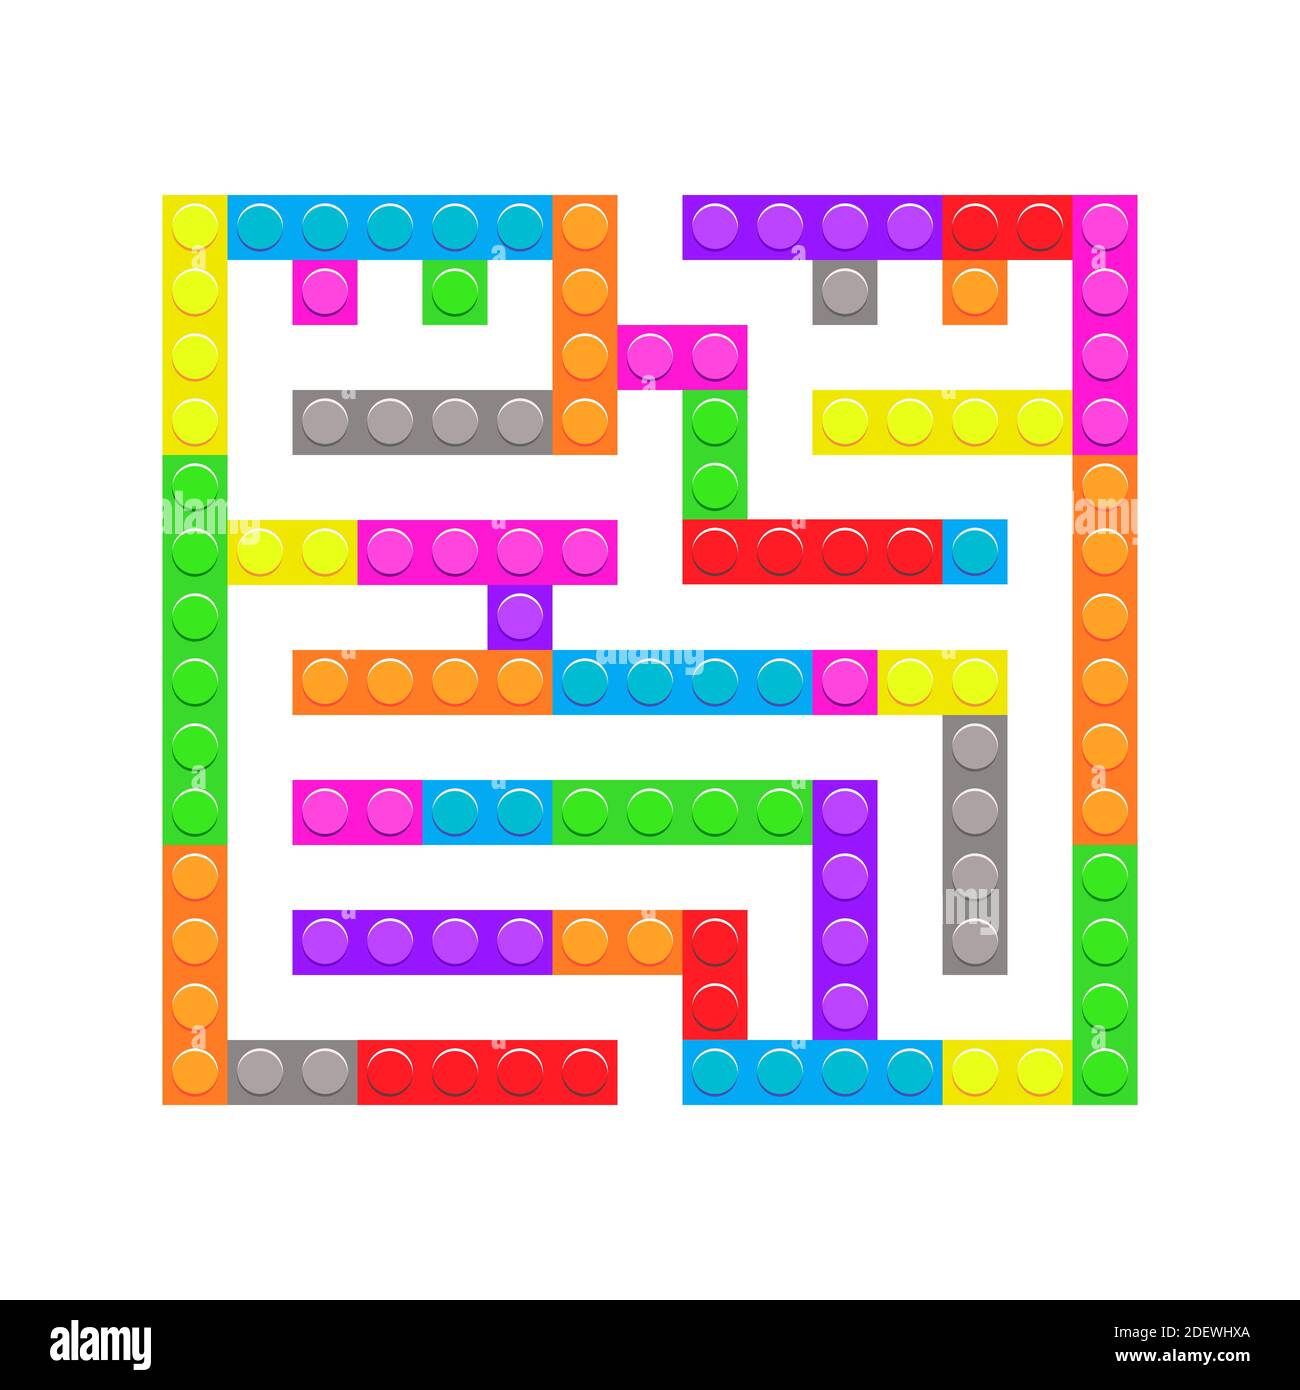 Square Labyrinth Ziegel Spielzeug Labyrinth Spiel für Kinder. Labyrinth Logik Rätsel. Ein Eingang und ein Weg zum Hotel. Vektor helle flache Illustration isola Stock Vektor